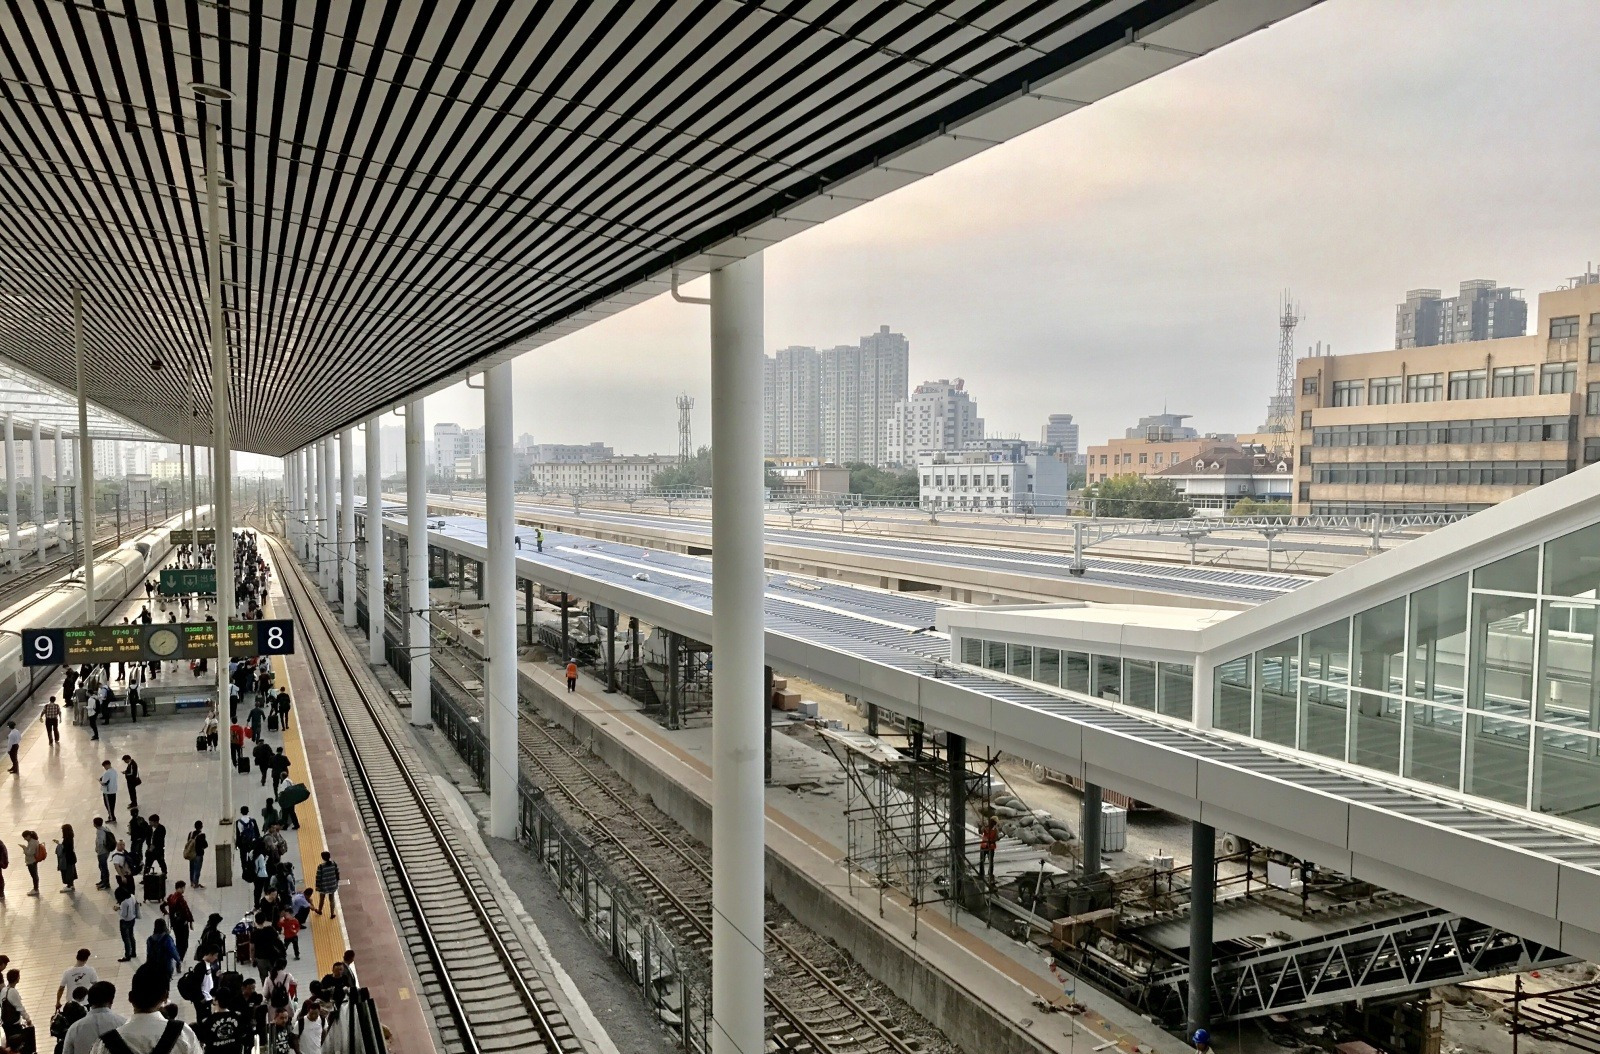 京沪铁路无锡站改造完成,南北广场互联互通,预